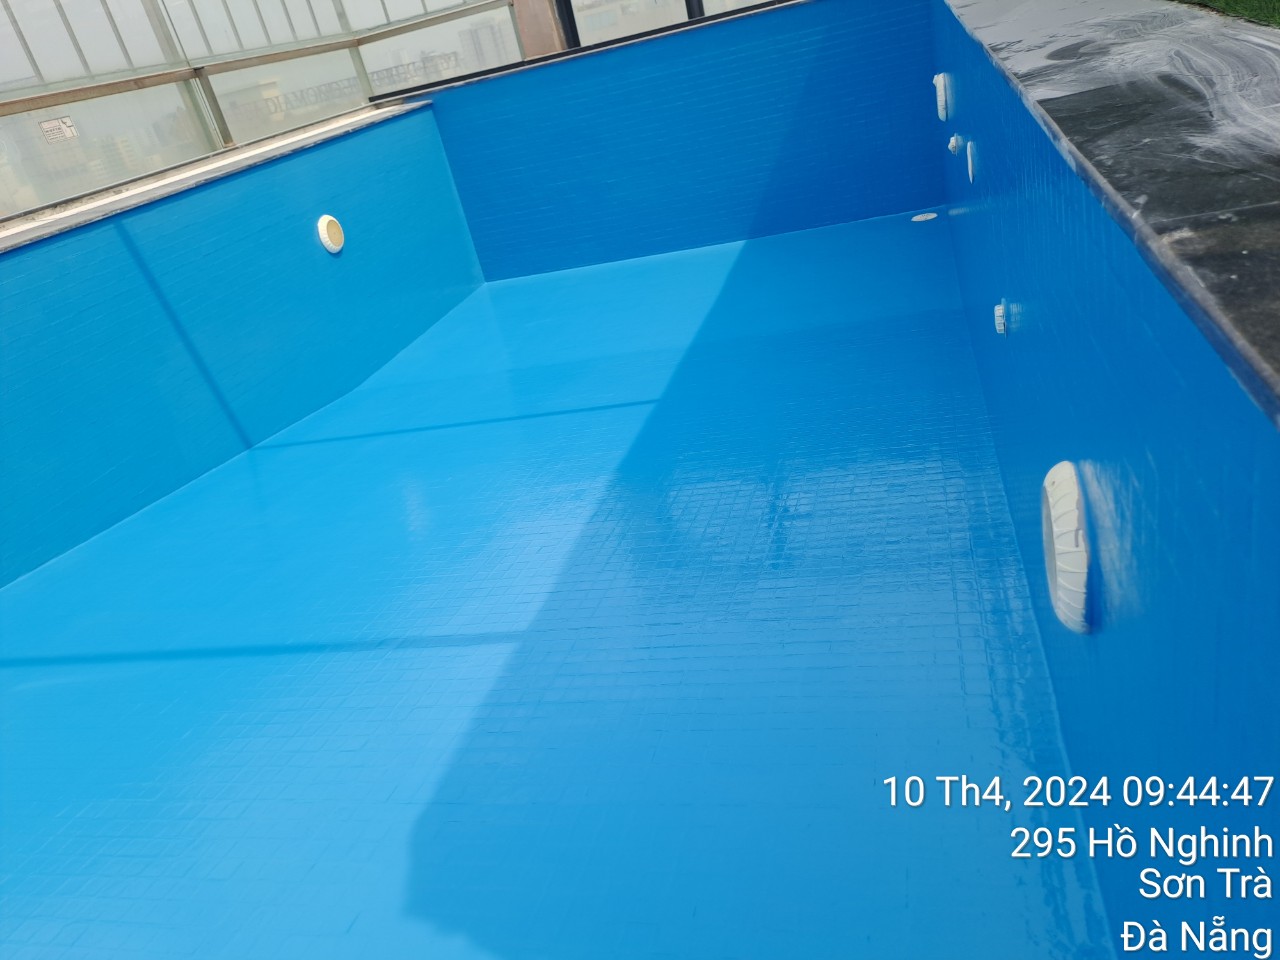 Thi công chống thấm lớp gạch cũ cho hồ bơi với sơn polyurethane: Giải pháp hoàn hảo cho hồ bơi